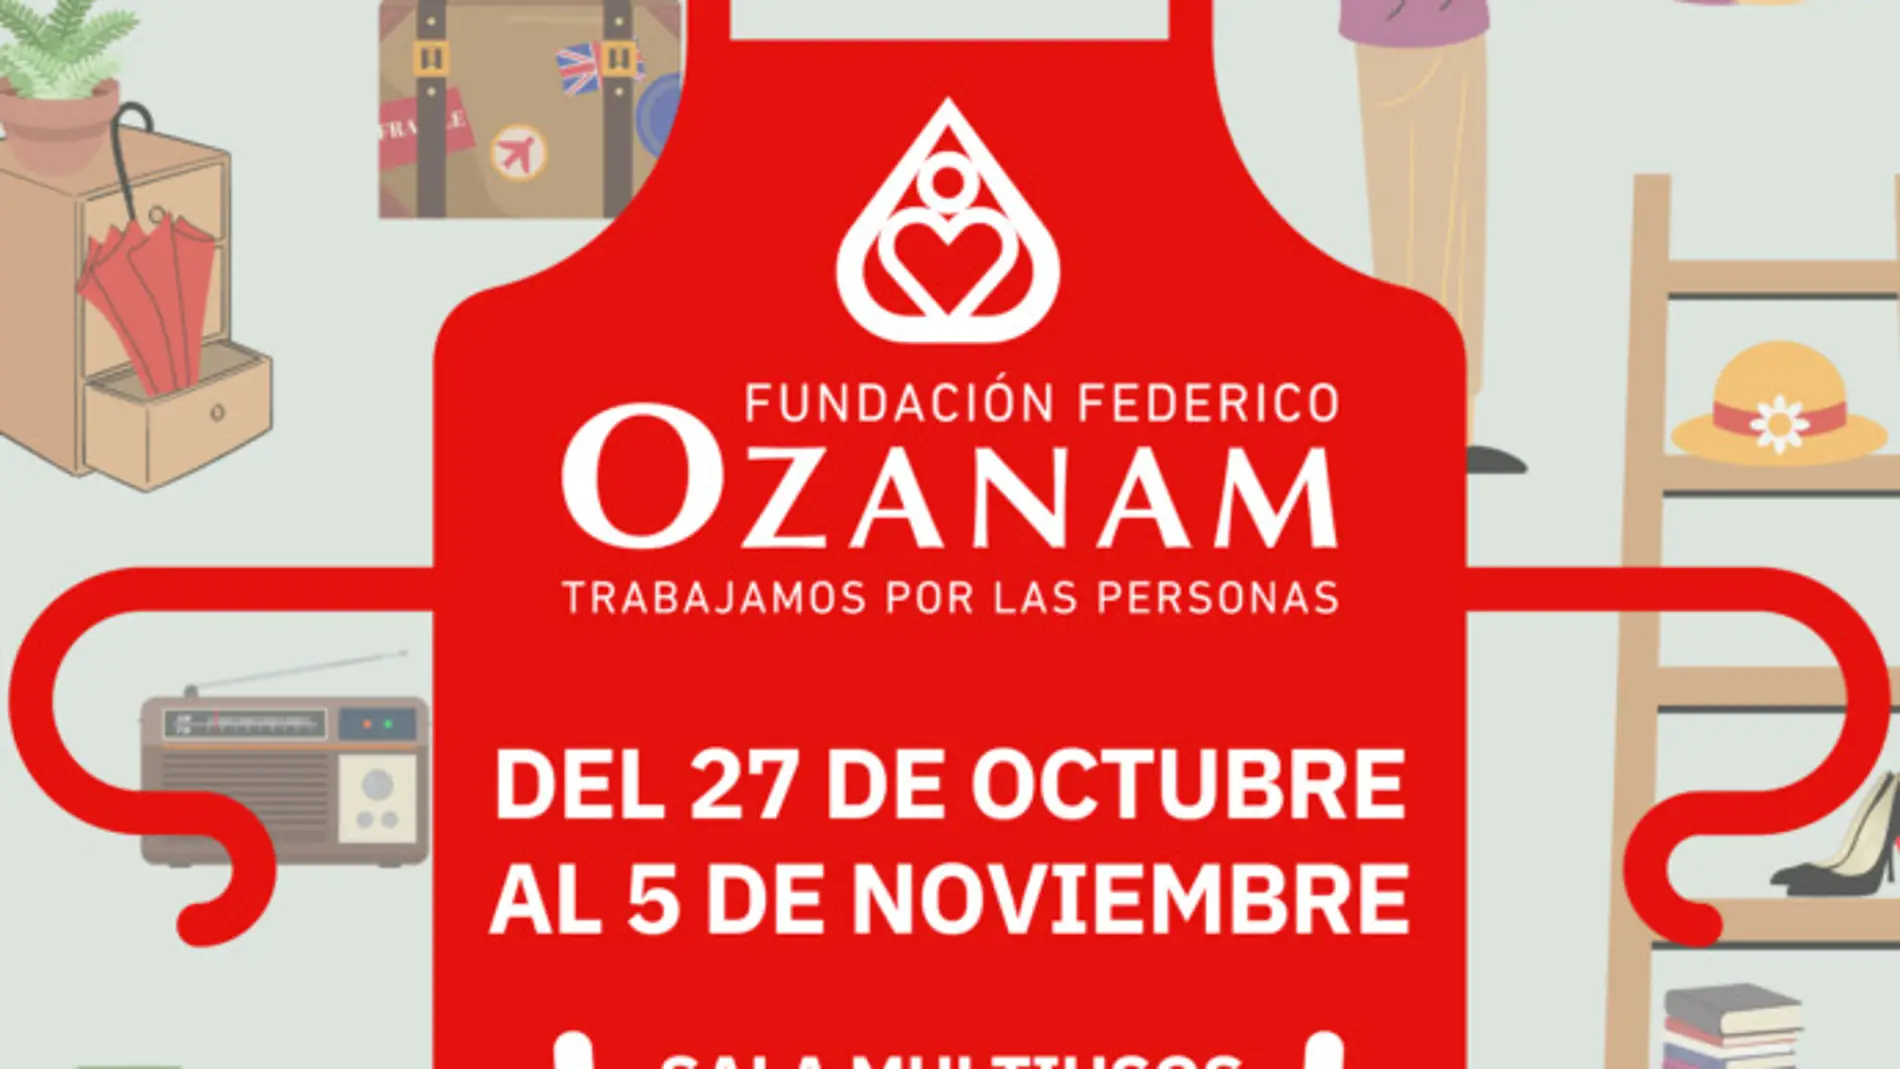 La Fundación Ozanam espera recaudar 300.000 euros